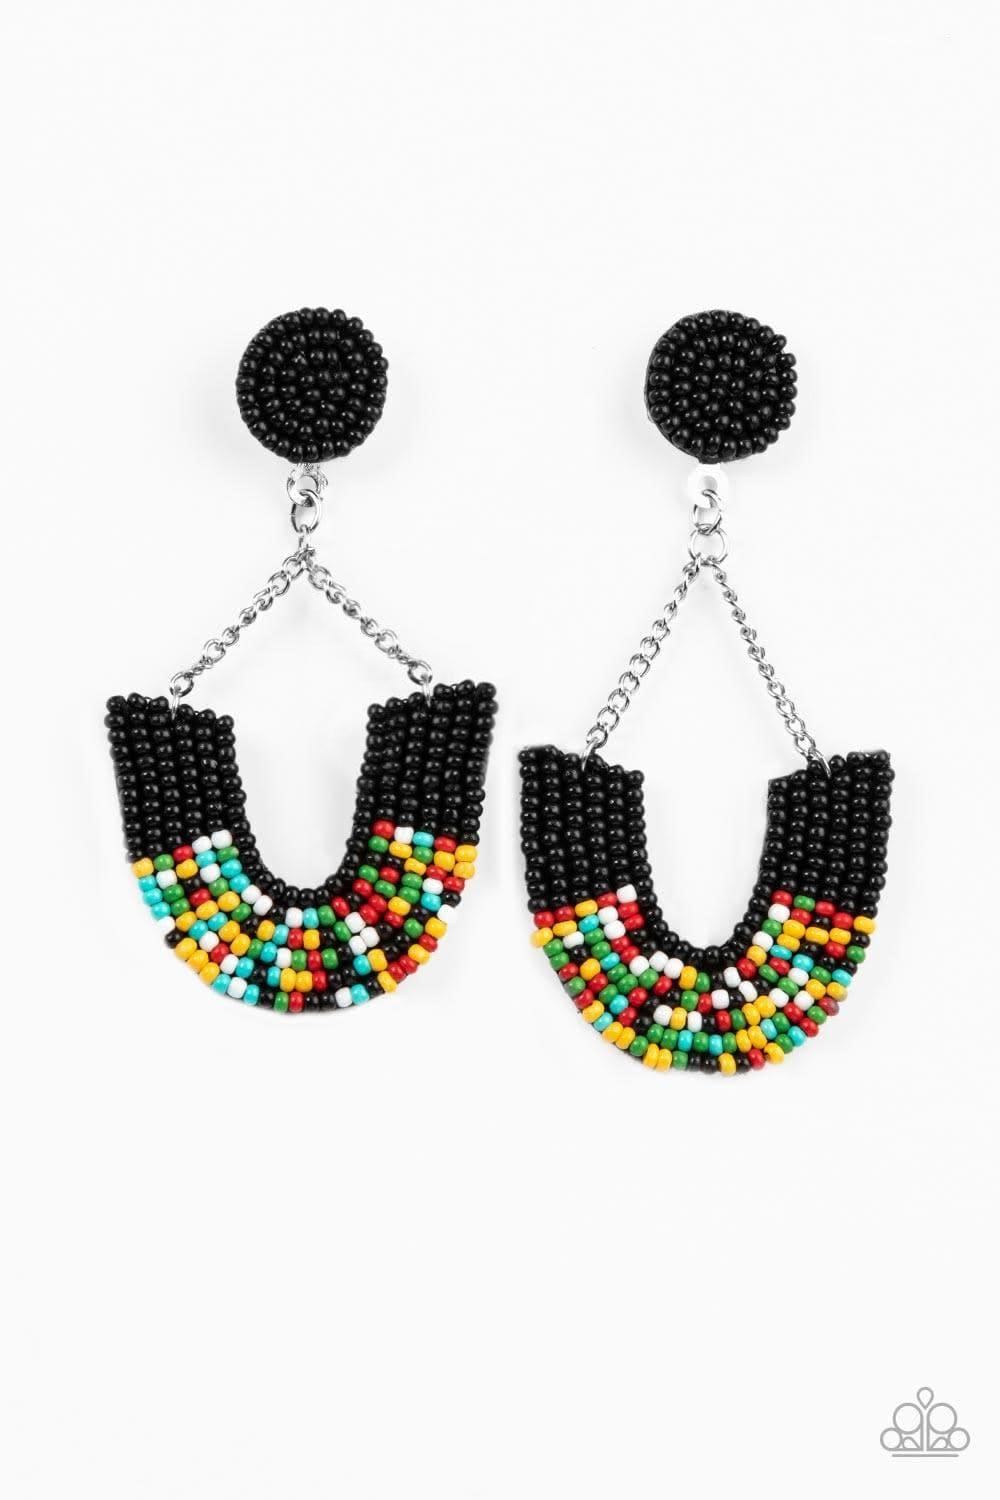 Paparazzi Accessories - Make It Rainbow - Black Earrings - Bling by JessieK